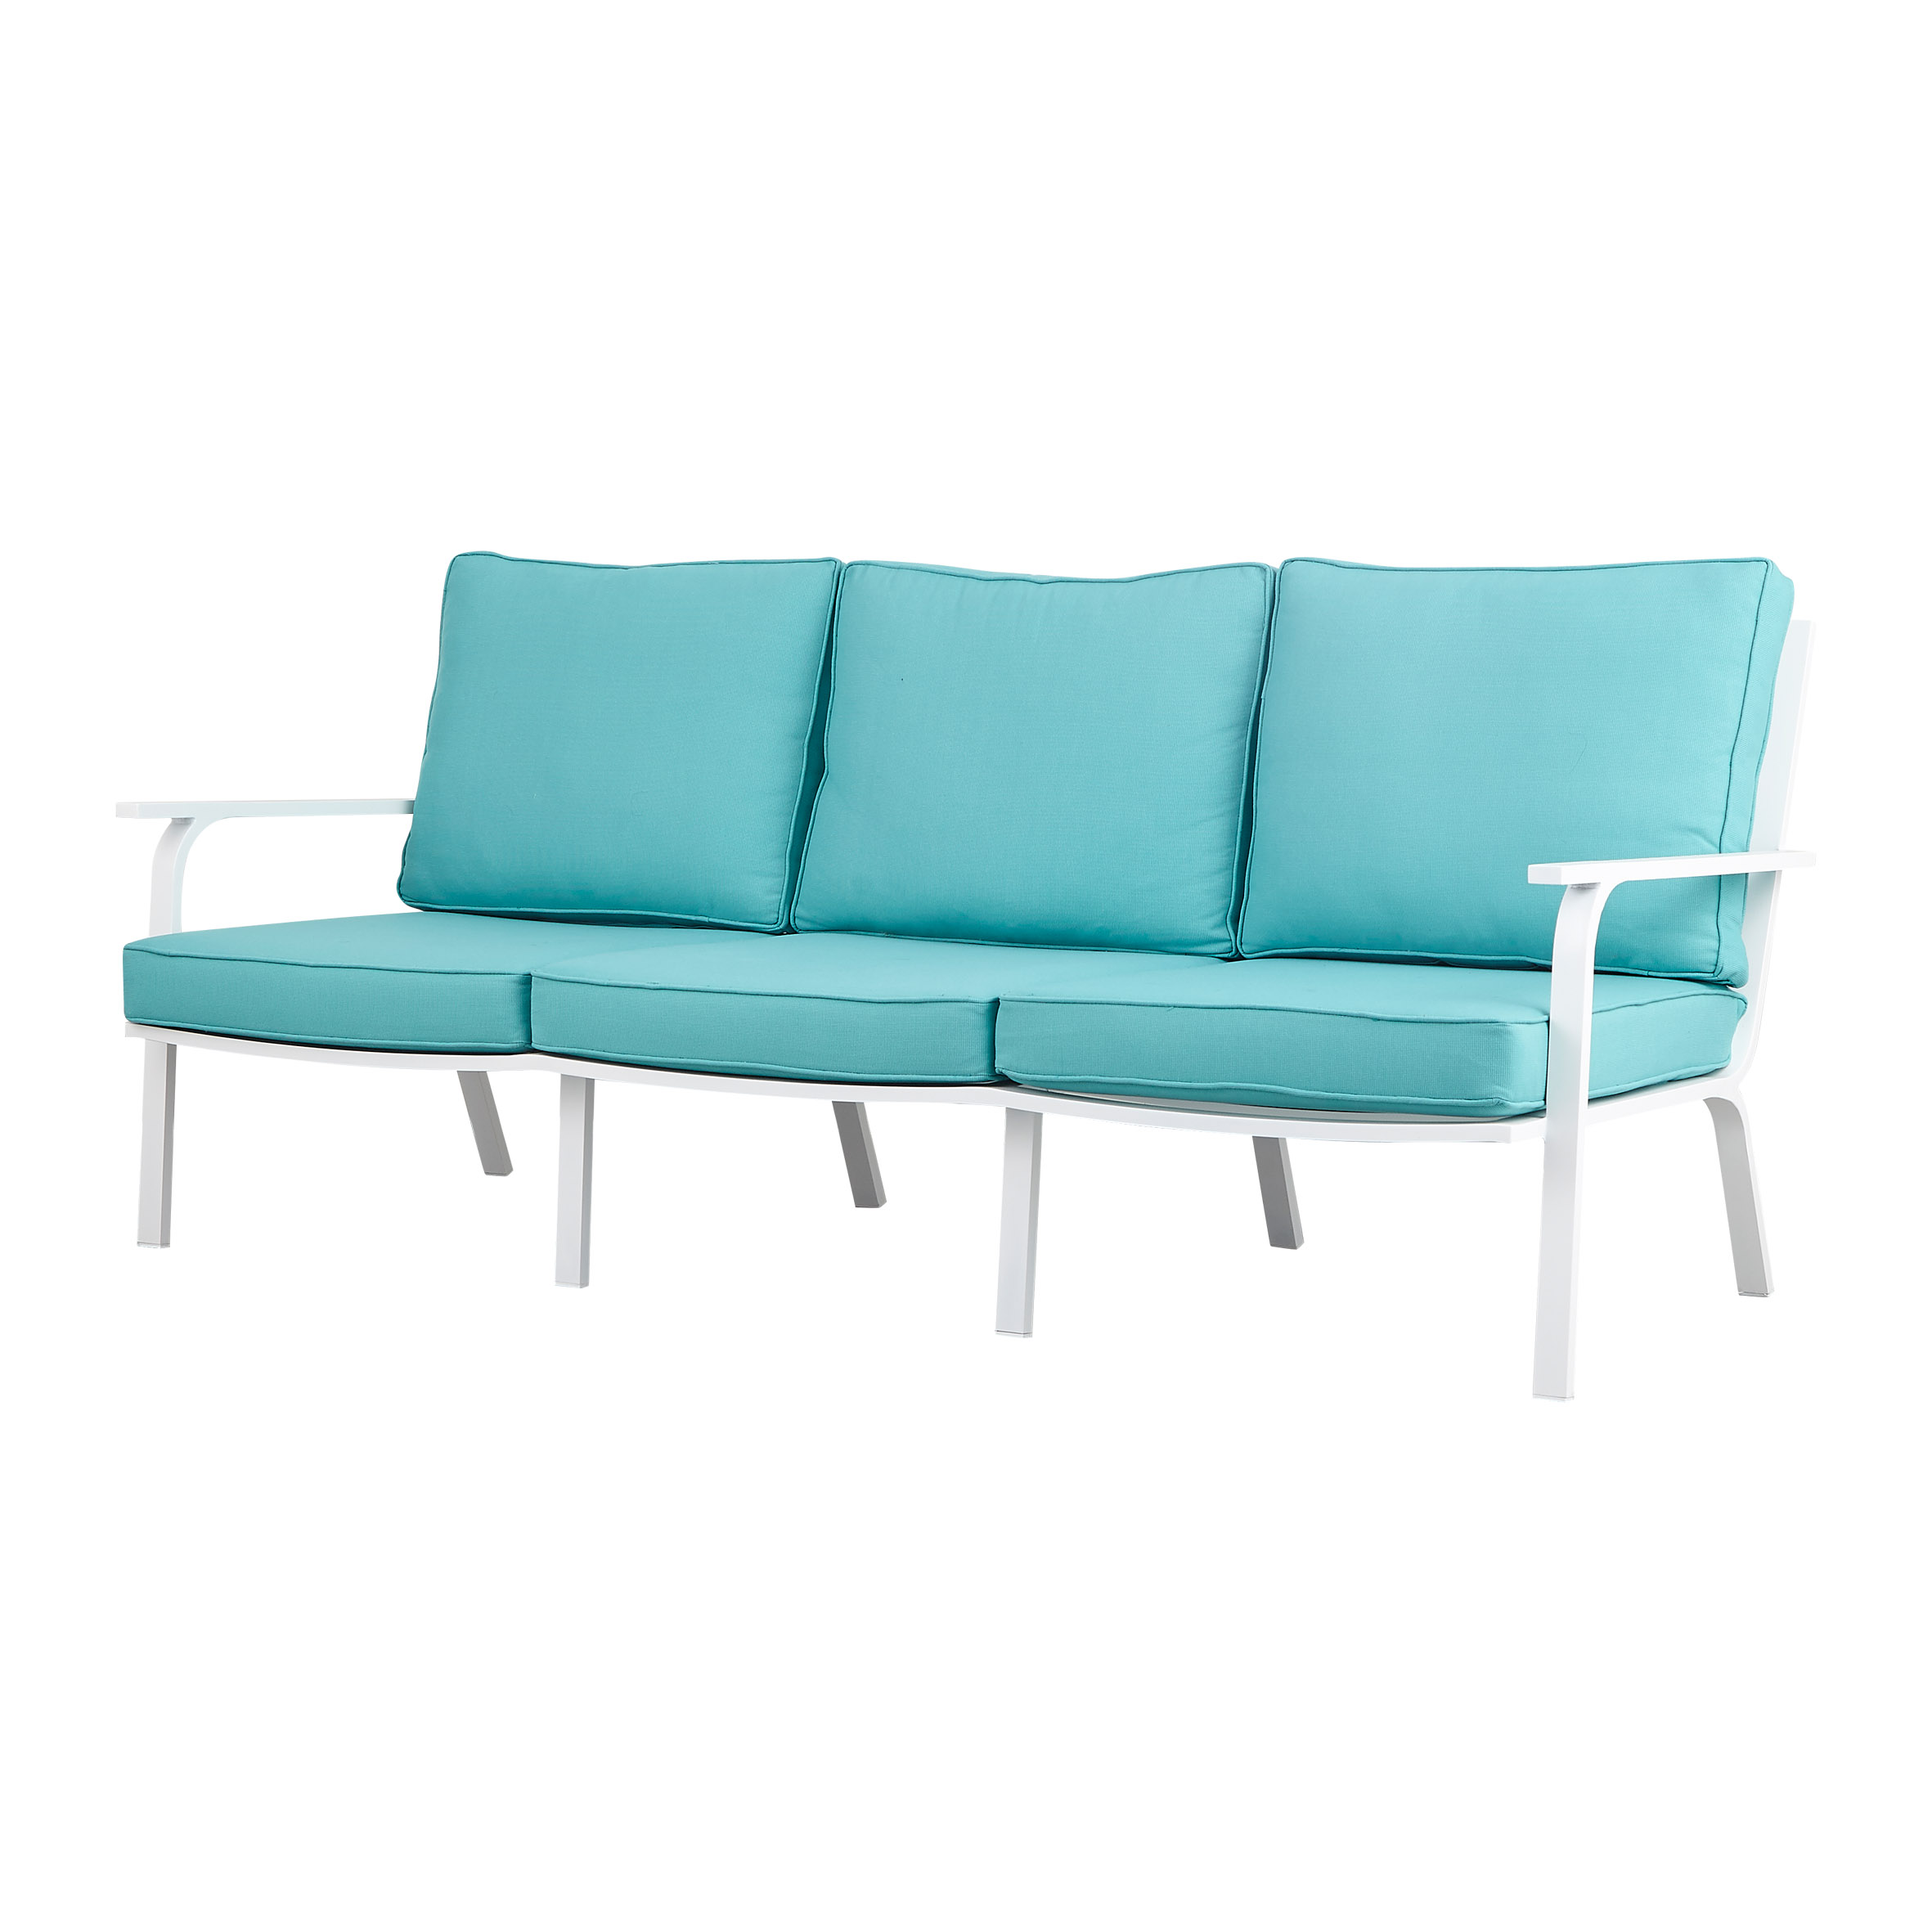 Best High quality Modern Aluminum Outdoor Furniture Suppliers –  Da Vinci 3-seat sofa – TAILONG